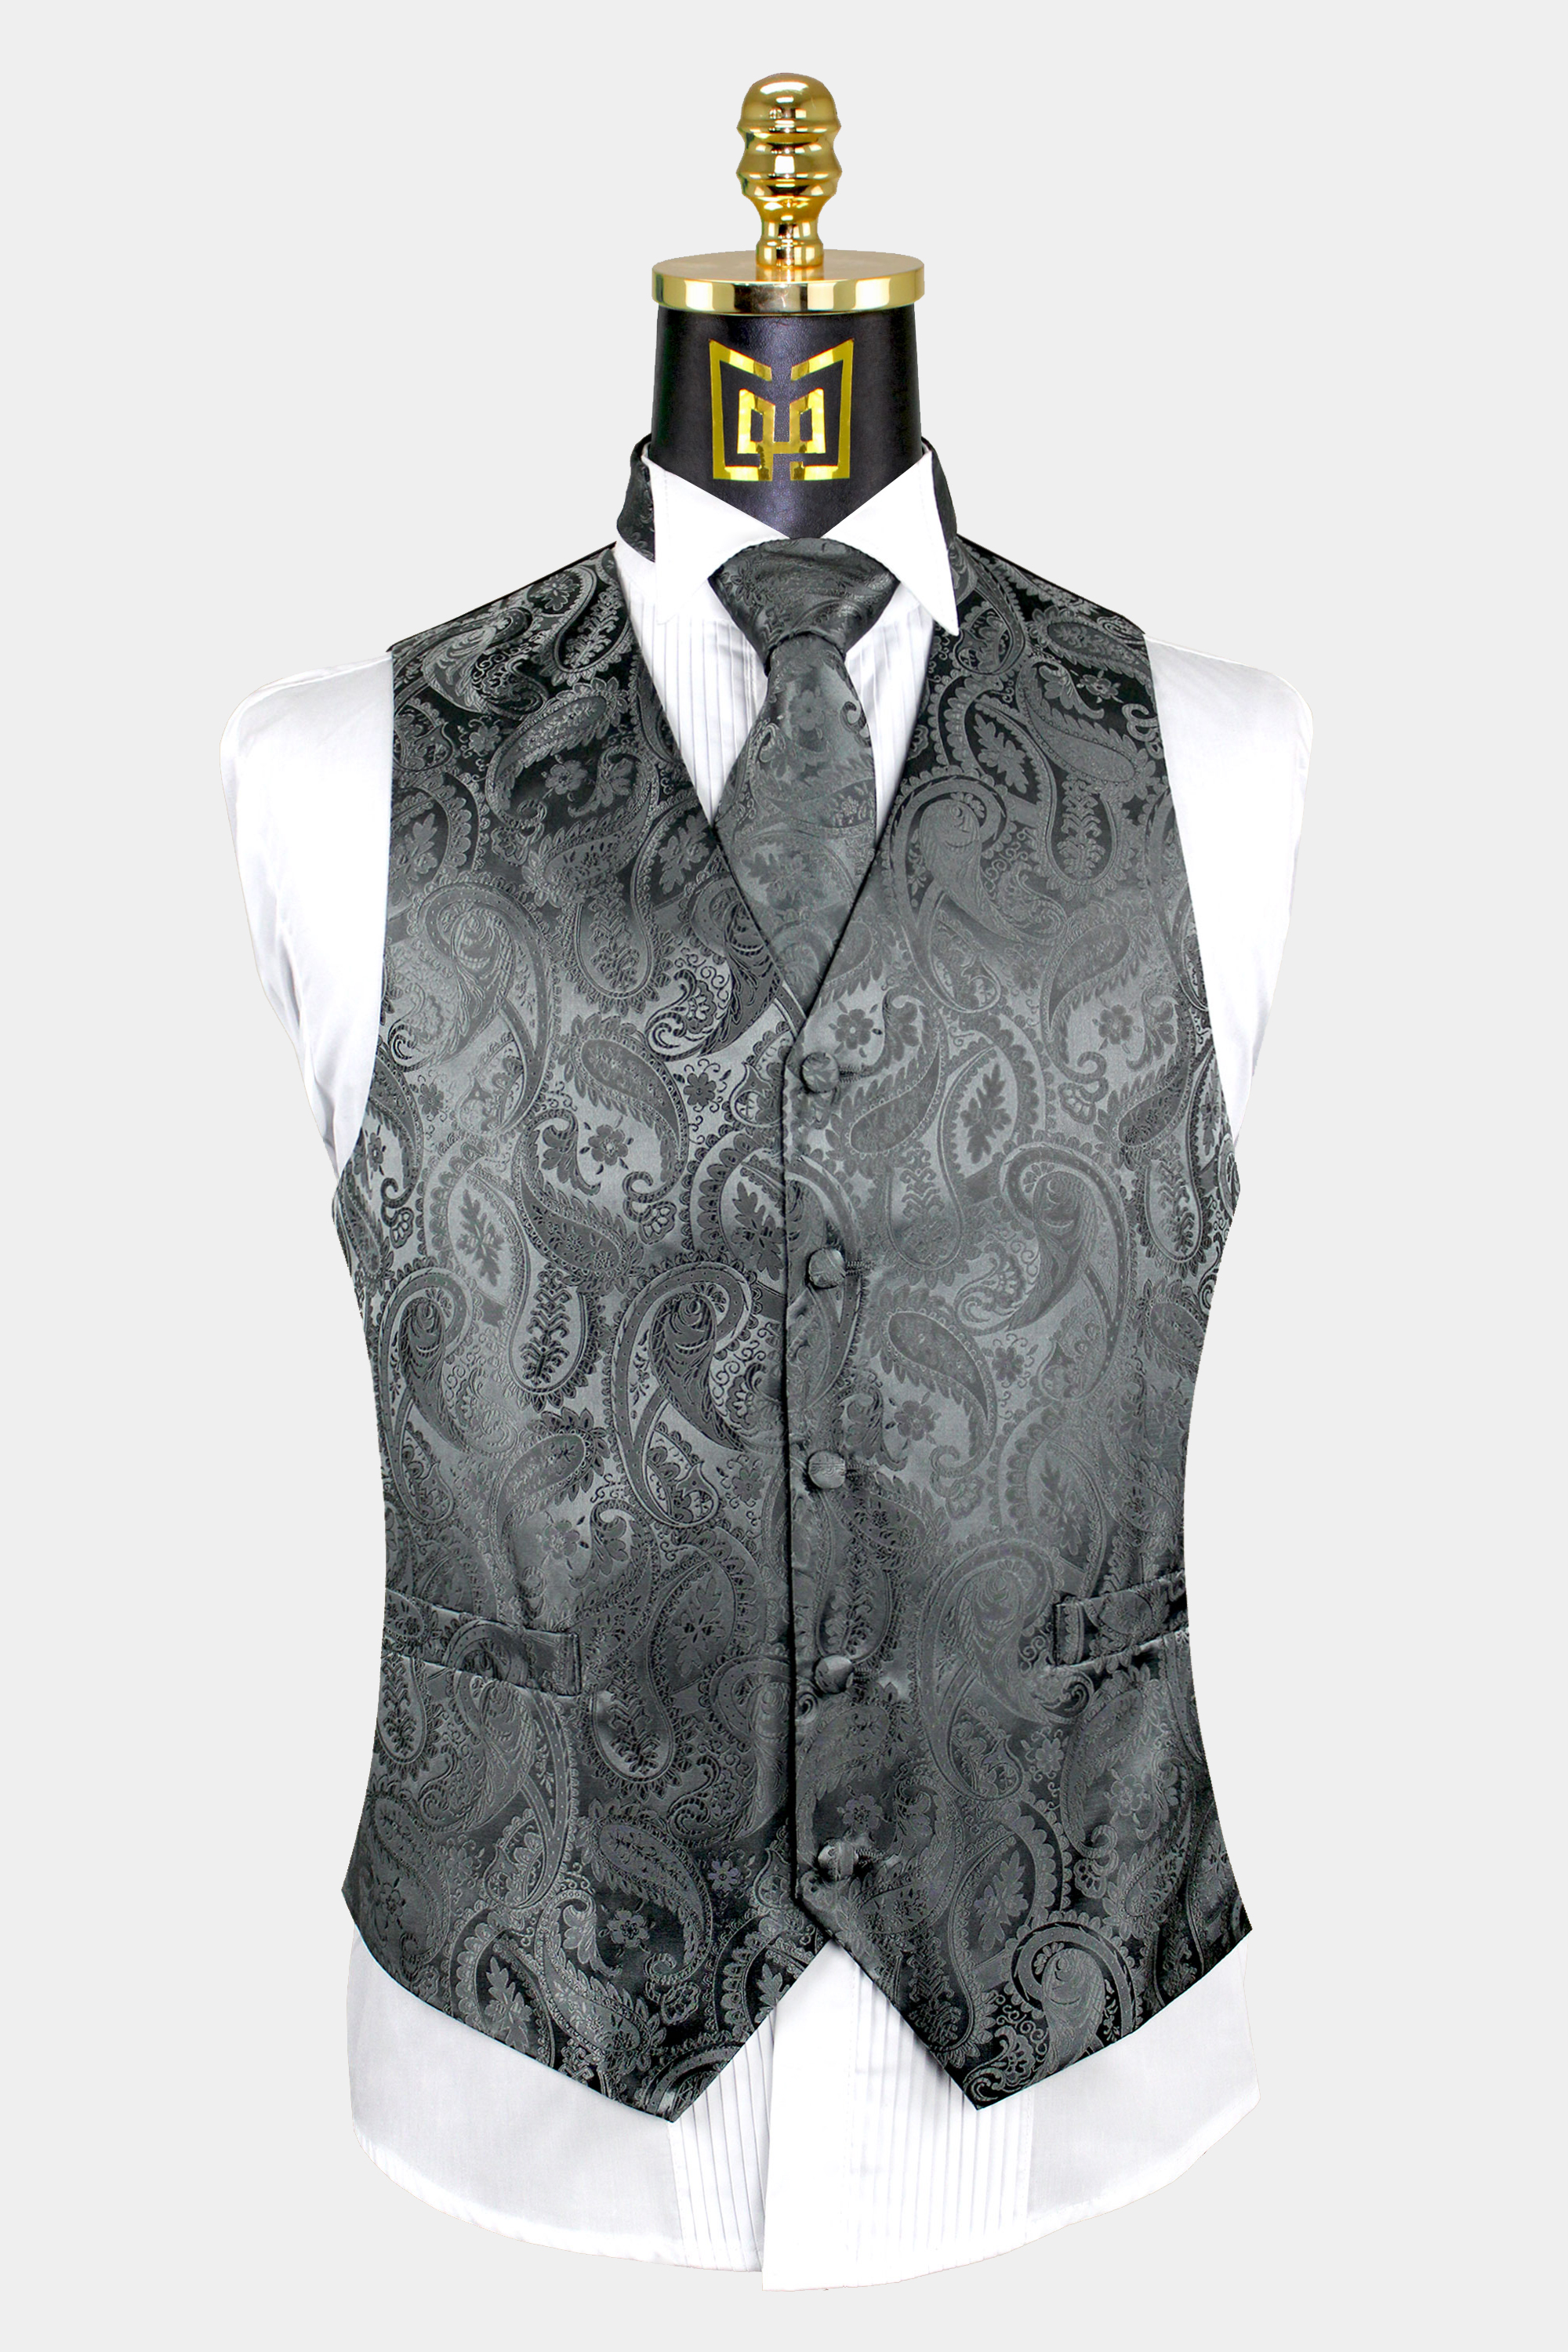 Charcoal Grey Paisley Vest & Tie Set - 3 Piece